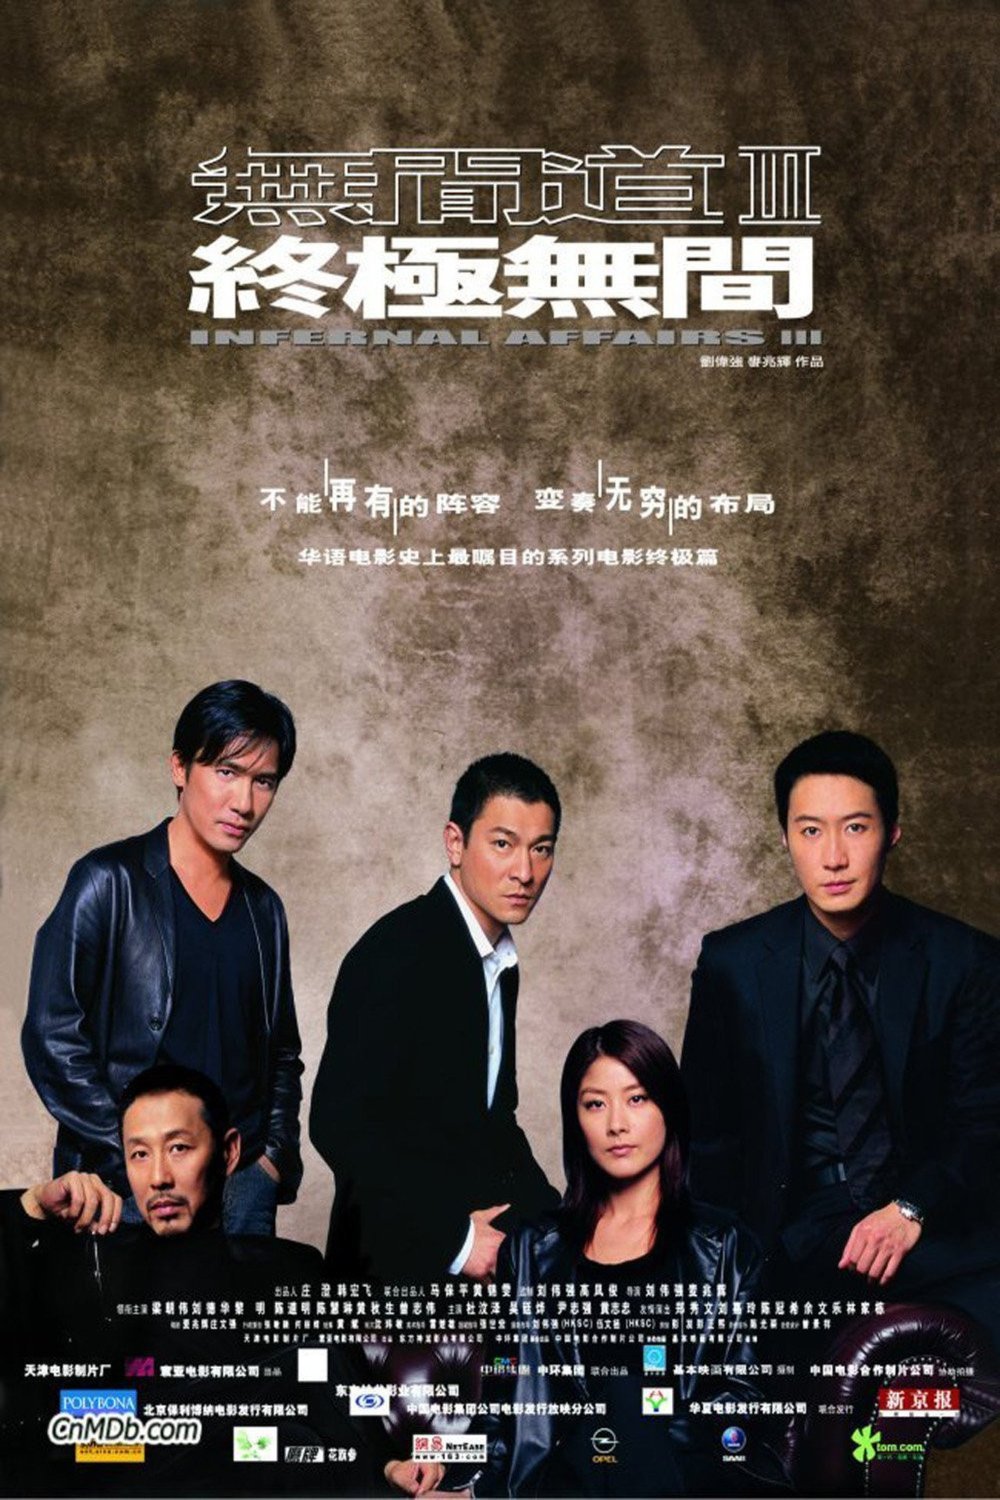 L'affiche originale du film Infernal Affairs III en Cantonais